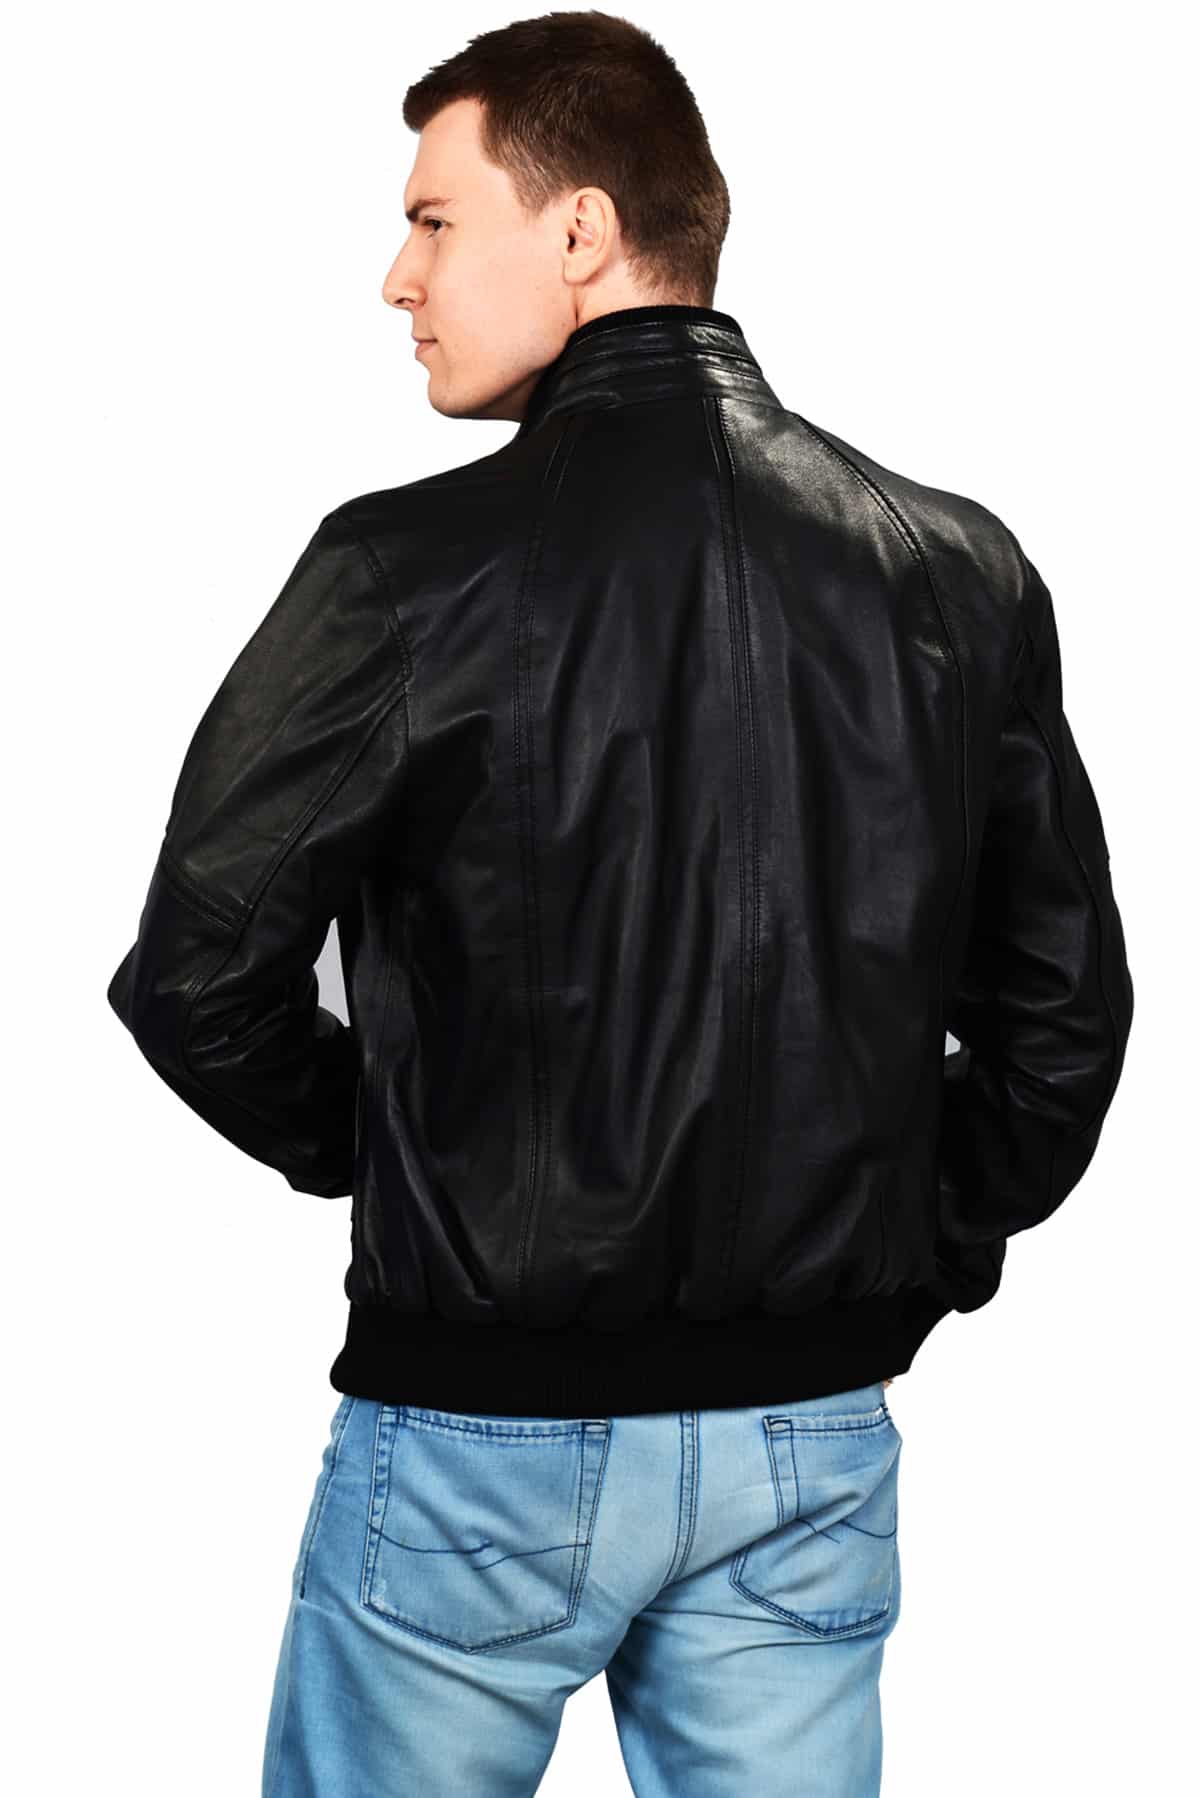 Men's 100 % Real Black Leather Bomber Ferret Jacket